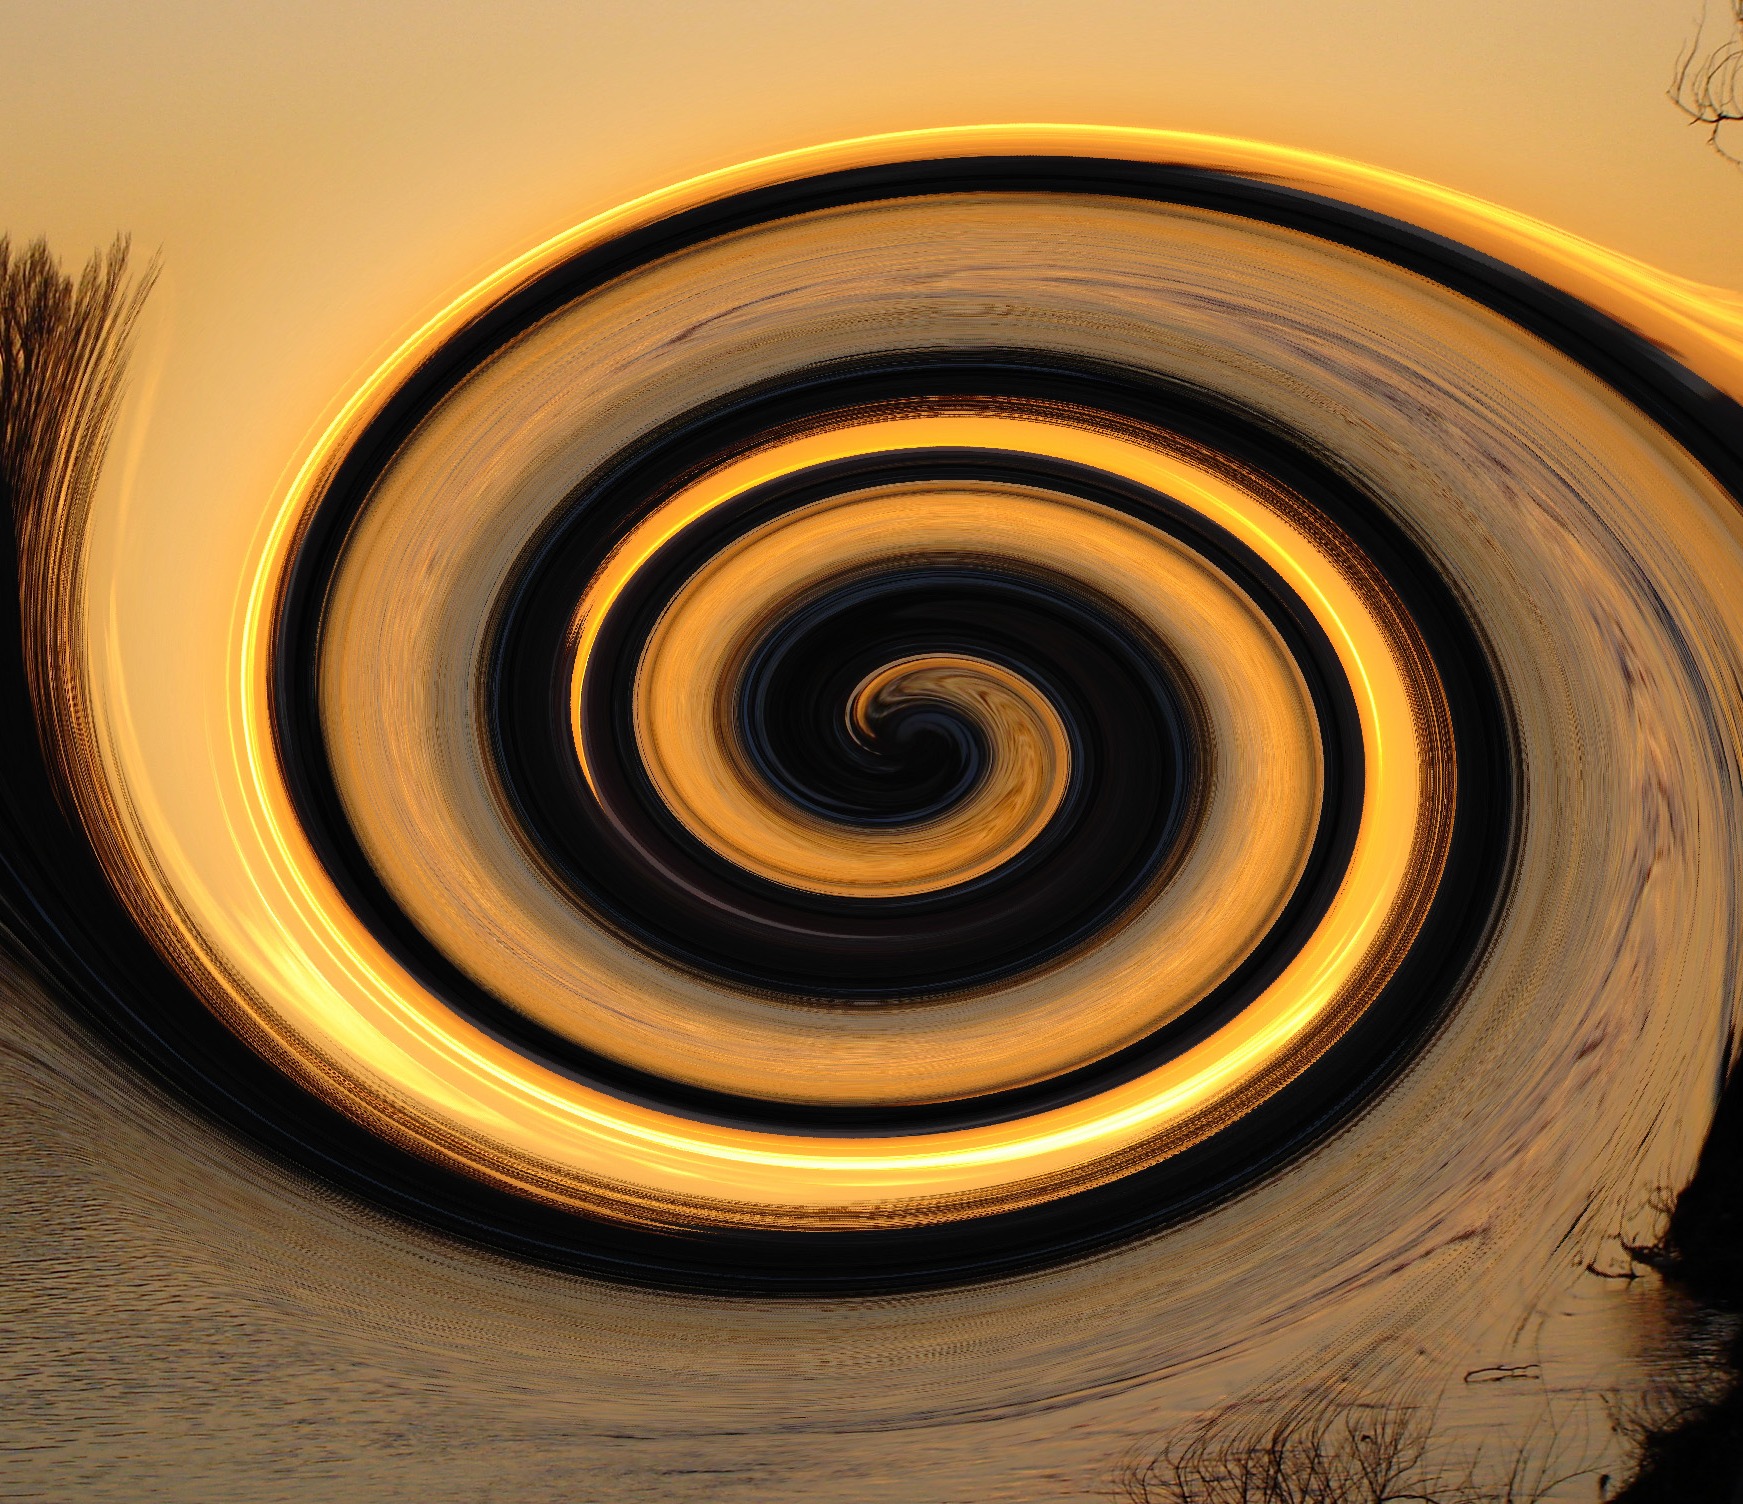 Twirl by Jooinn.